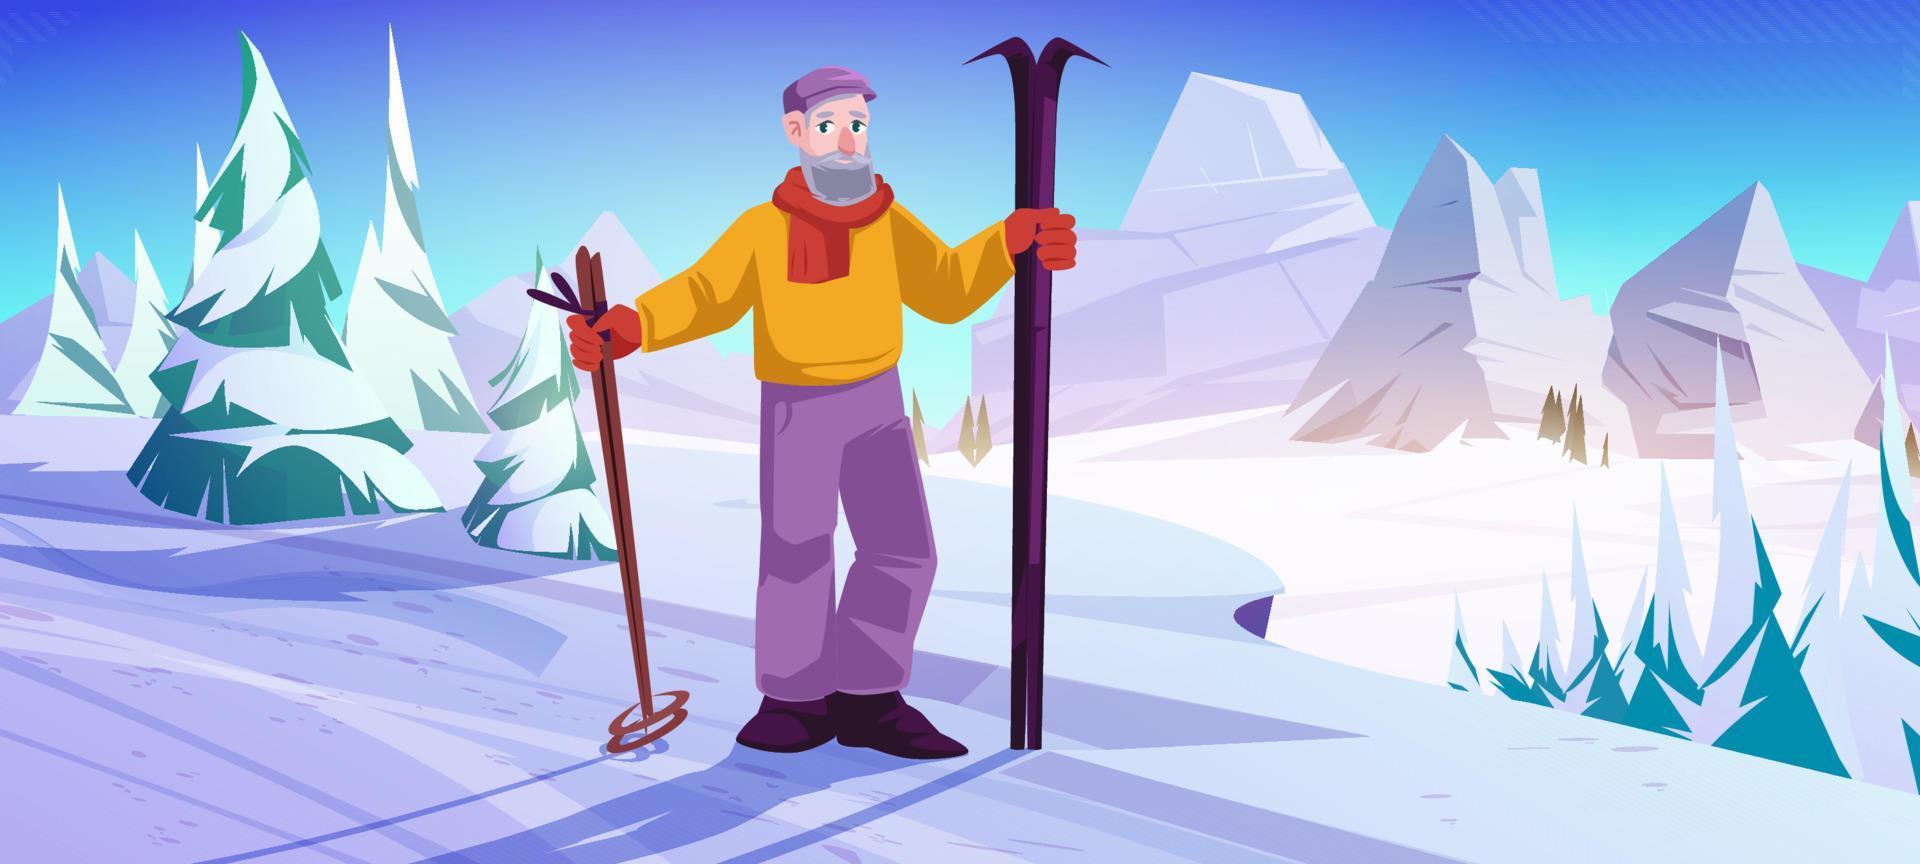 homme aîné avec ski et bâtons debout sur une pente de neige vecteur